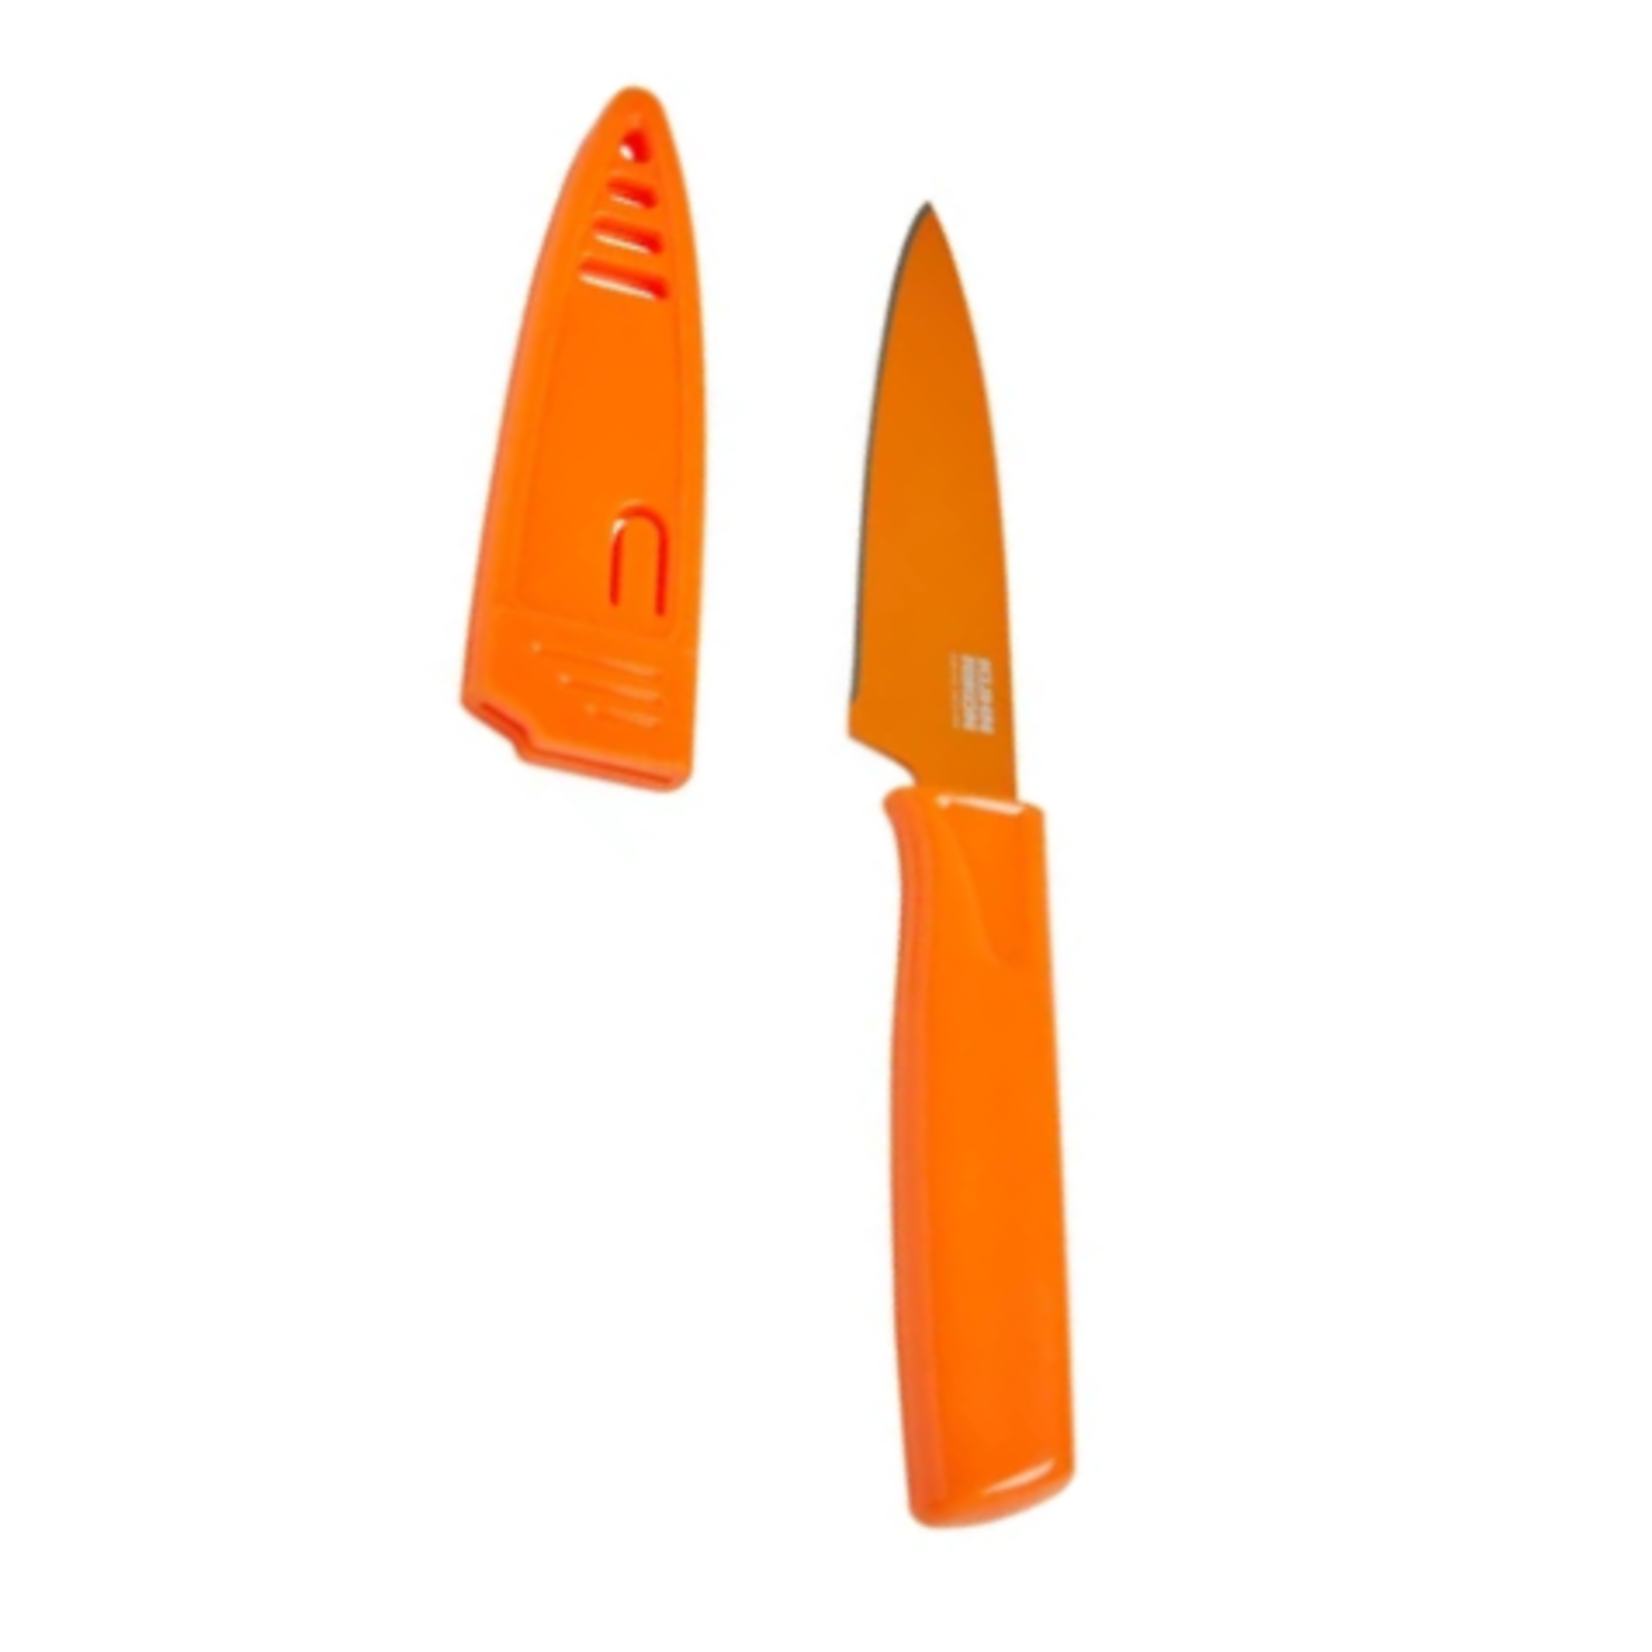 Kuhn Rikon Paring Knives, Tangerine